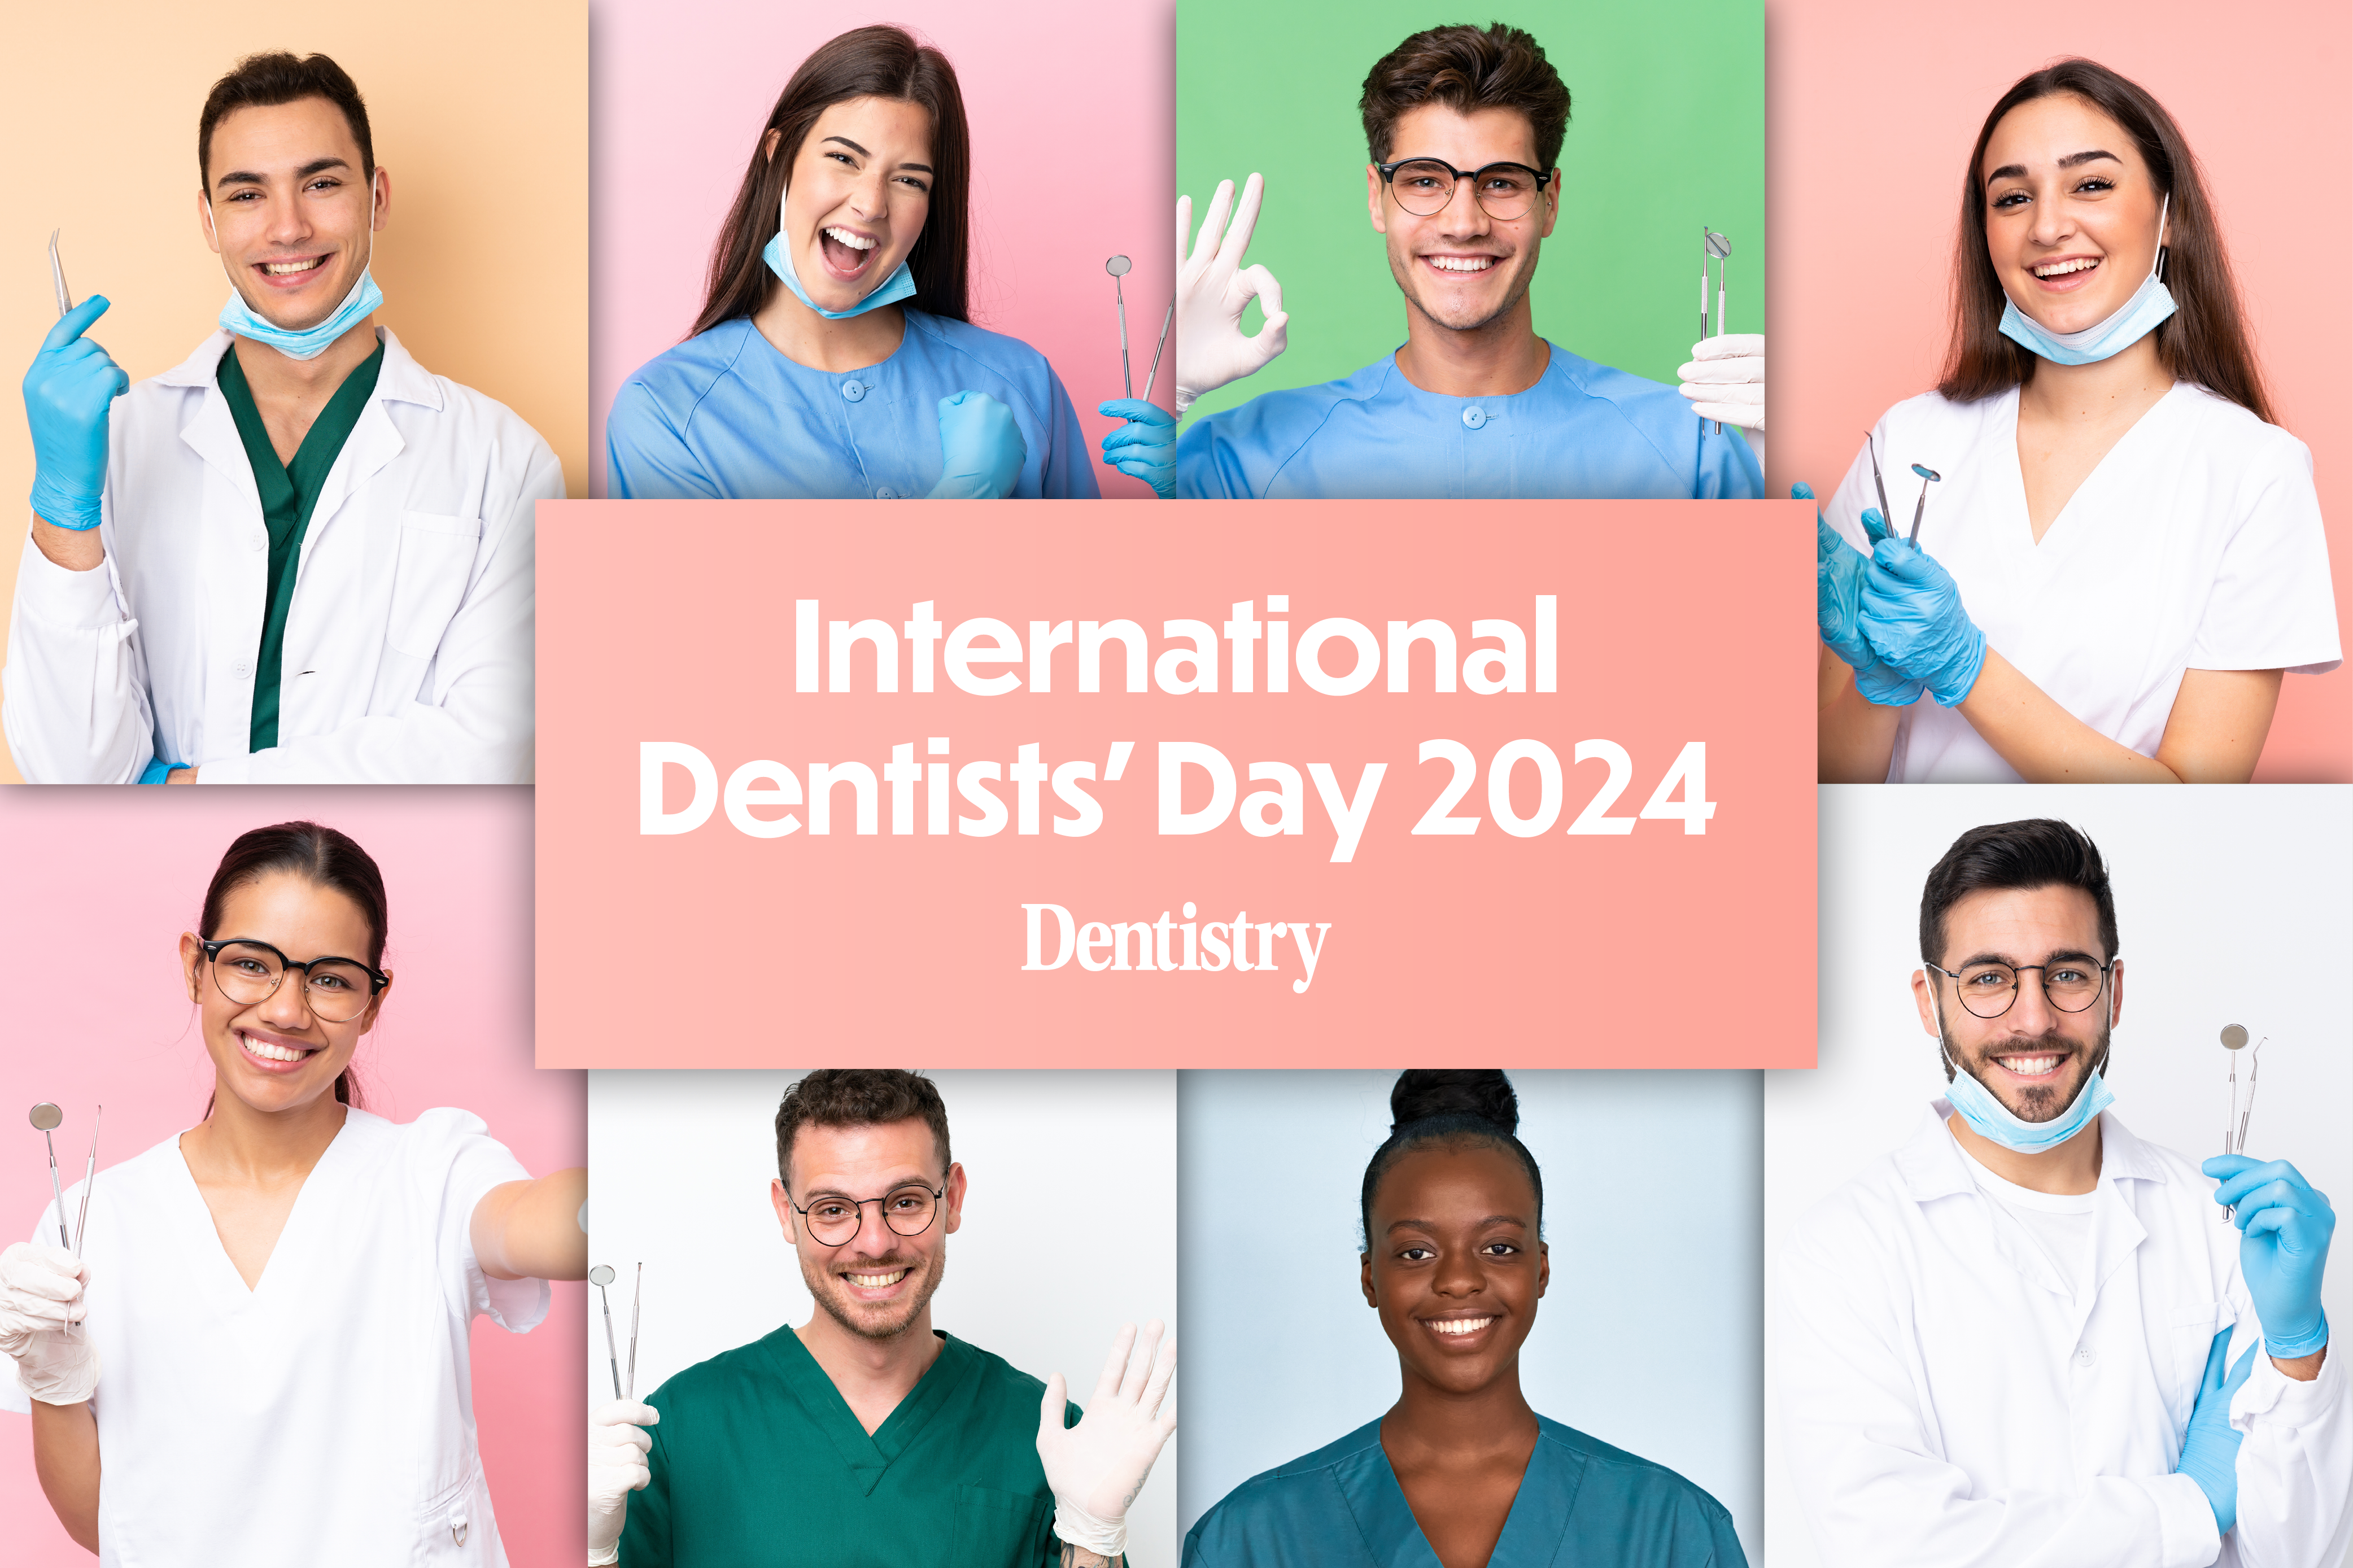 Celebrating International Dentists’ Day